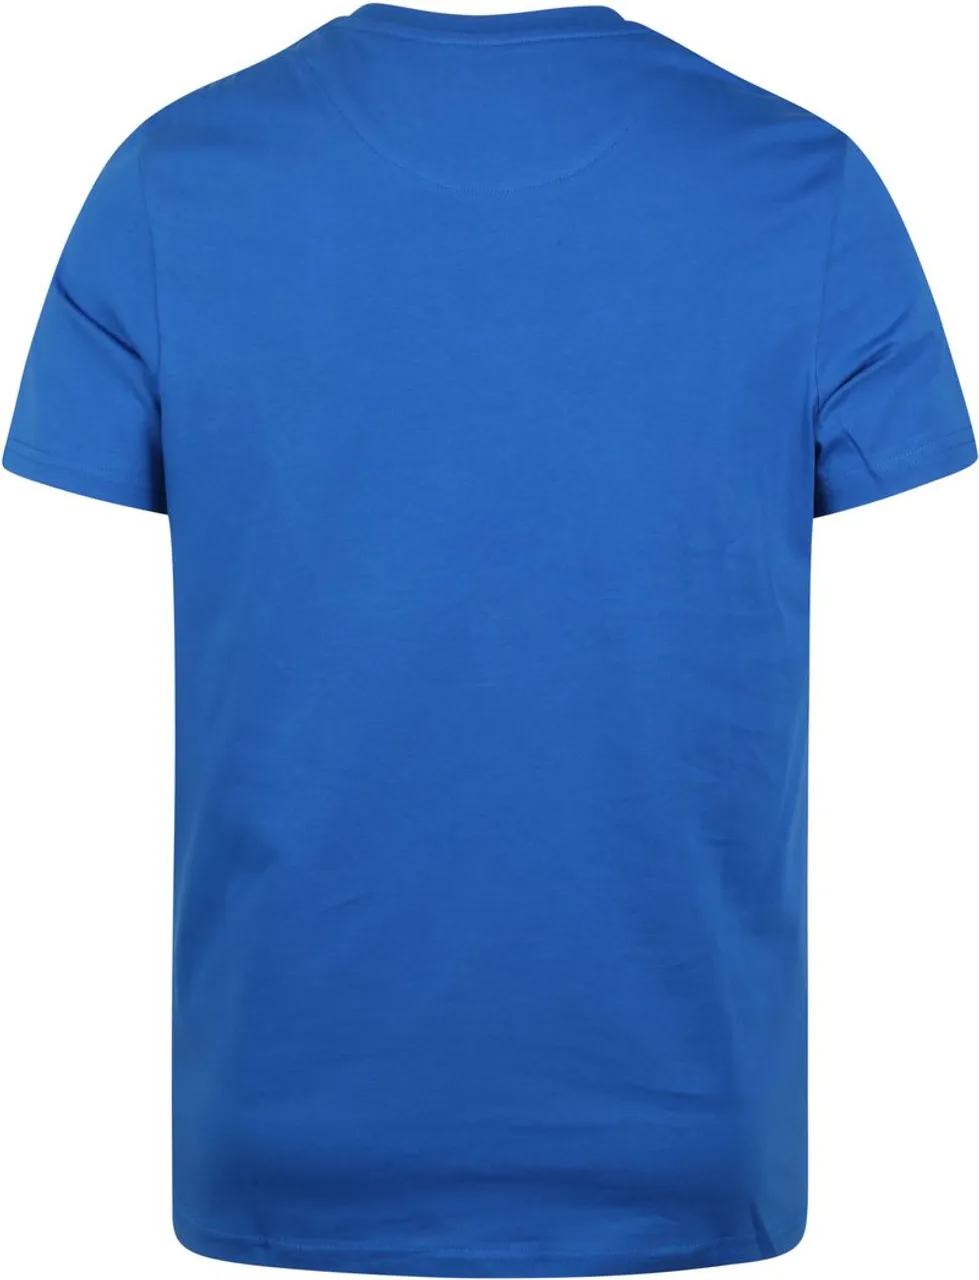 Lyle and Scott T-shirt Blauw